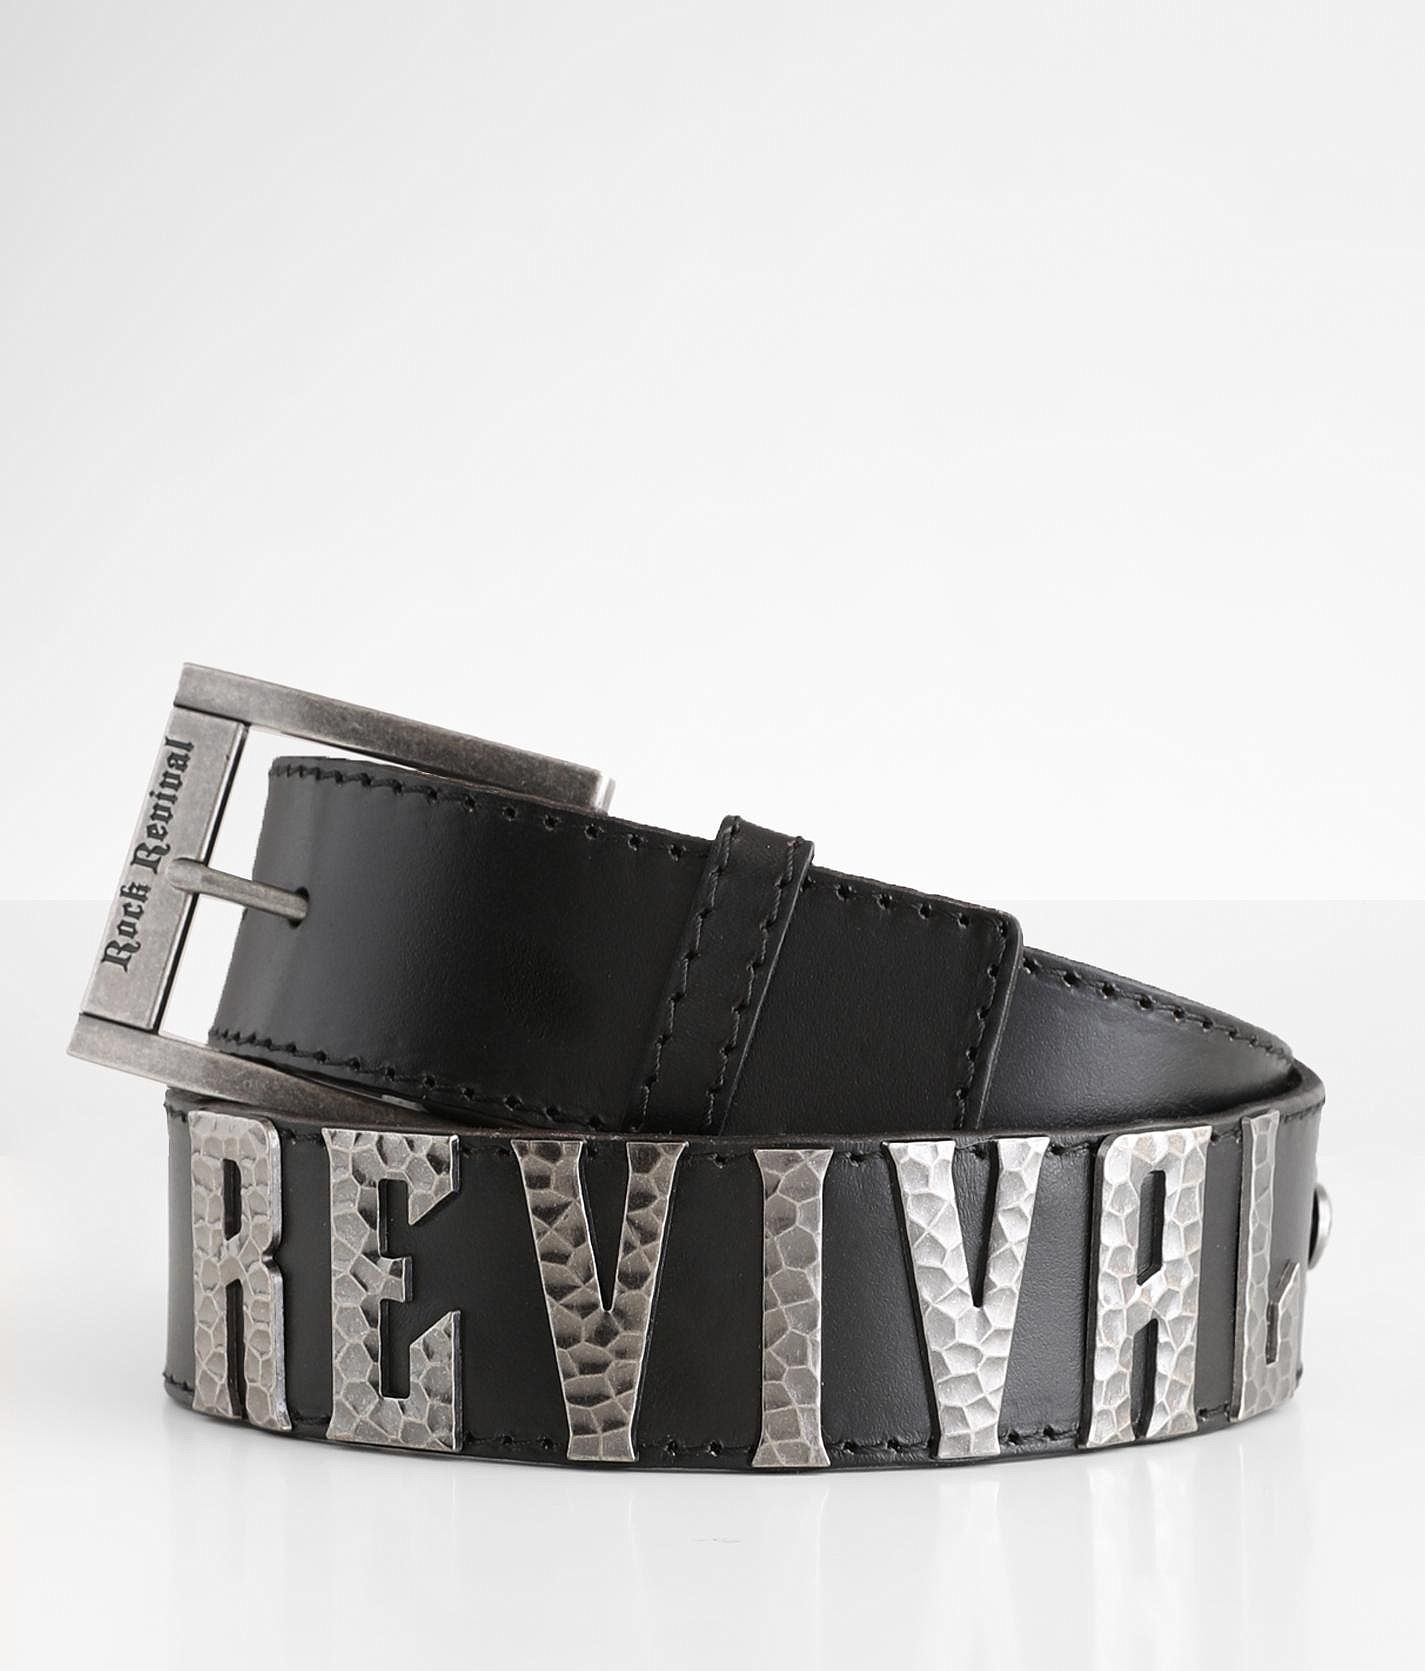 LV Belt Buckle – Rustic Revival Bags